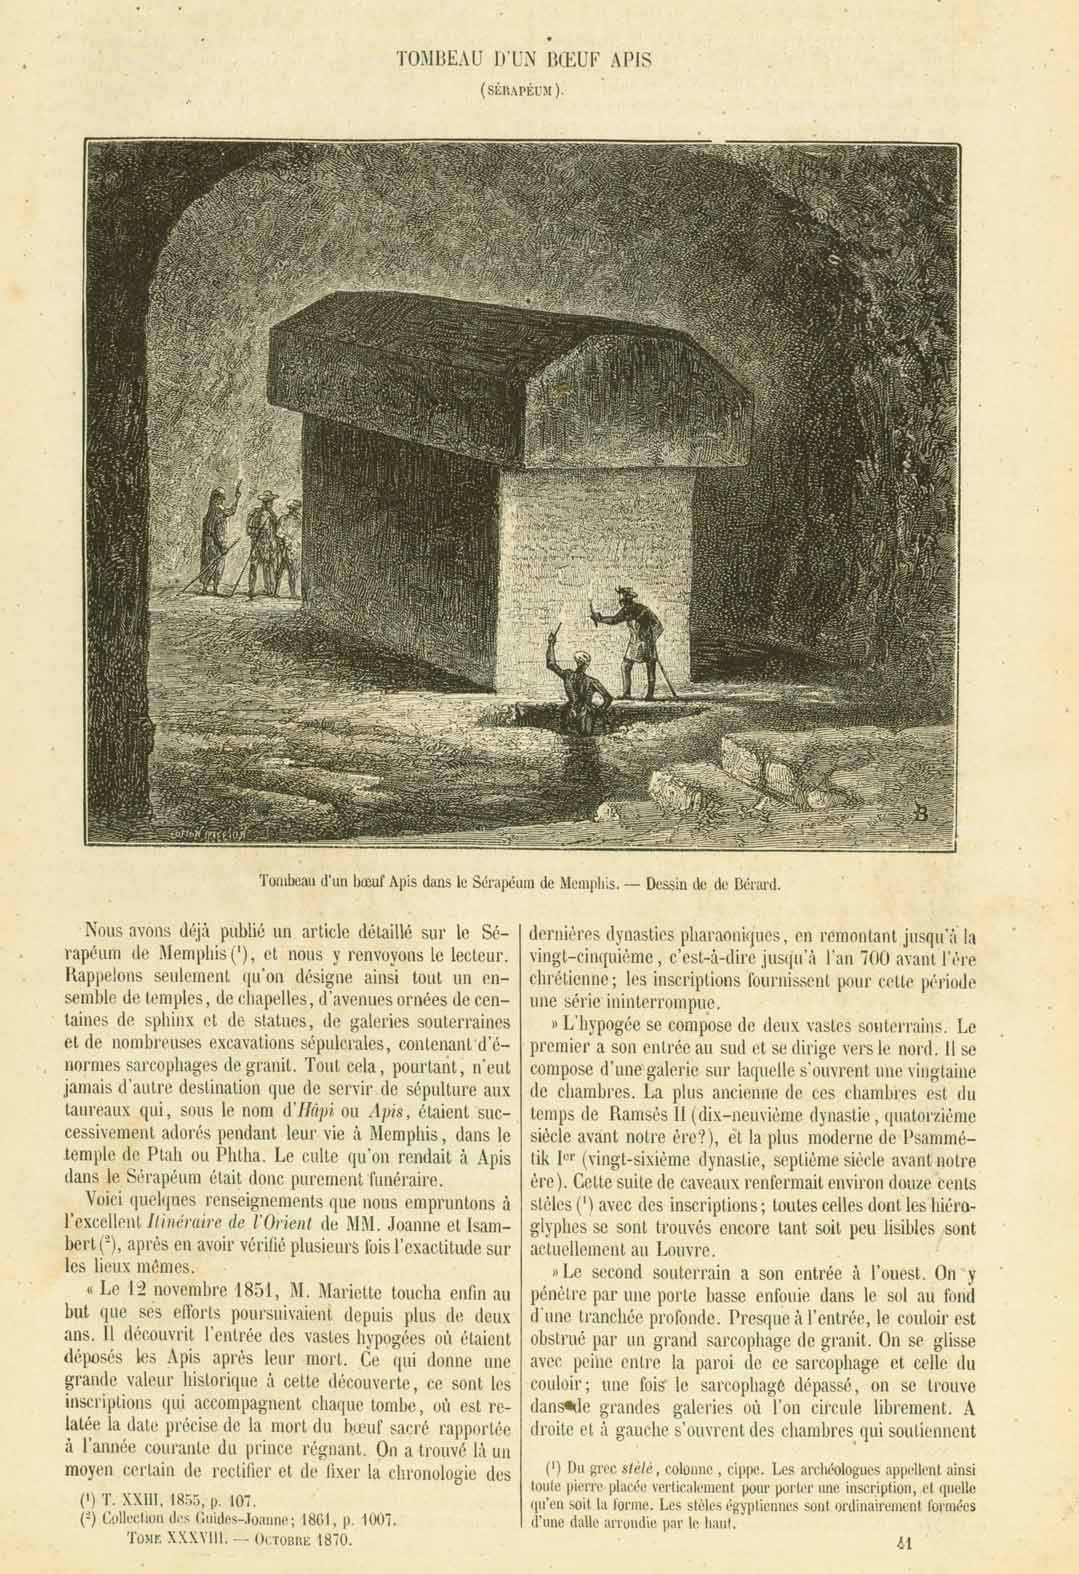 "Tombeau D'Un Boeuf Apis" (Serapeum) "Tombeau d'un boeuf Apis dans la Serapeum de Memphis"  Burial place of sacred bulls in Memphis.  Wood engraving with a page of text published 1870.